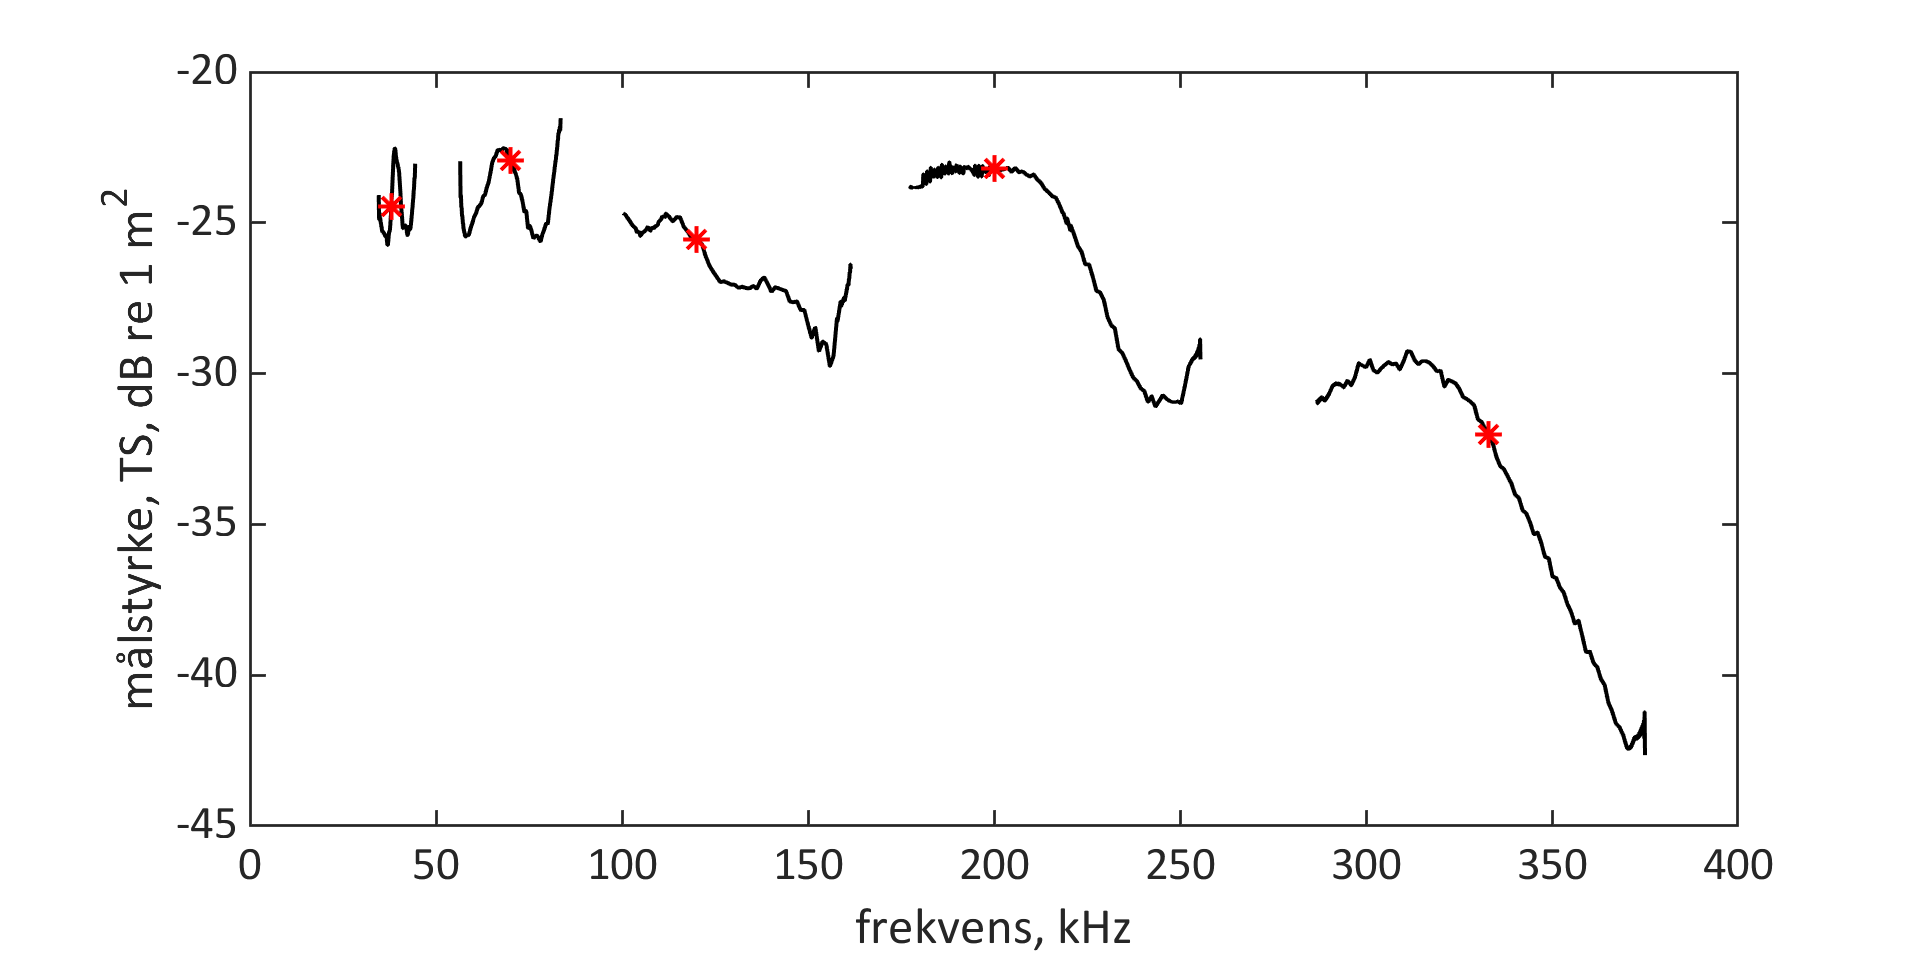 Graf som viser frekvenskurve frå breiband